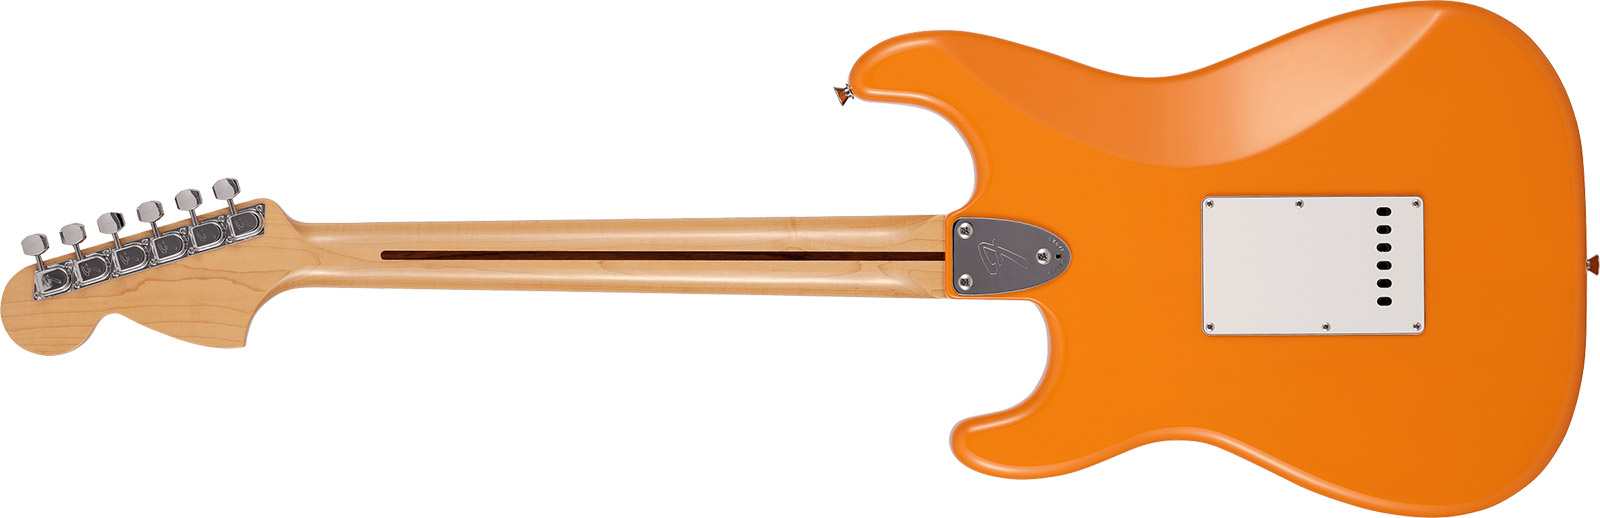 Fender Strat International Color Ltd Jap 3s Trem Rw - Capri Orange - E-Gitarre in Str-Form - Variation 1